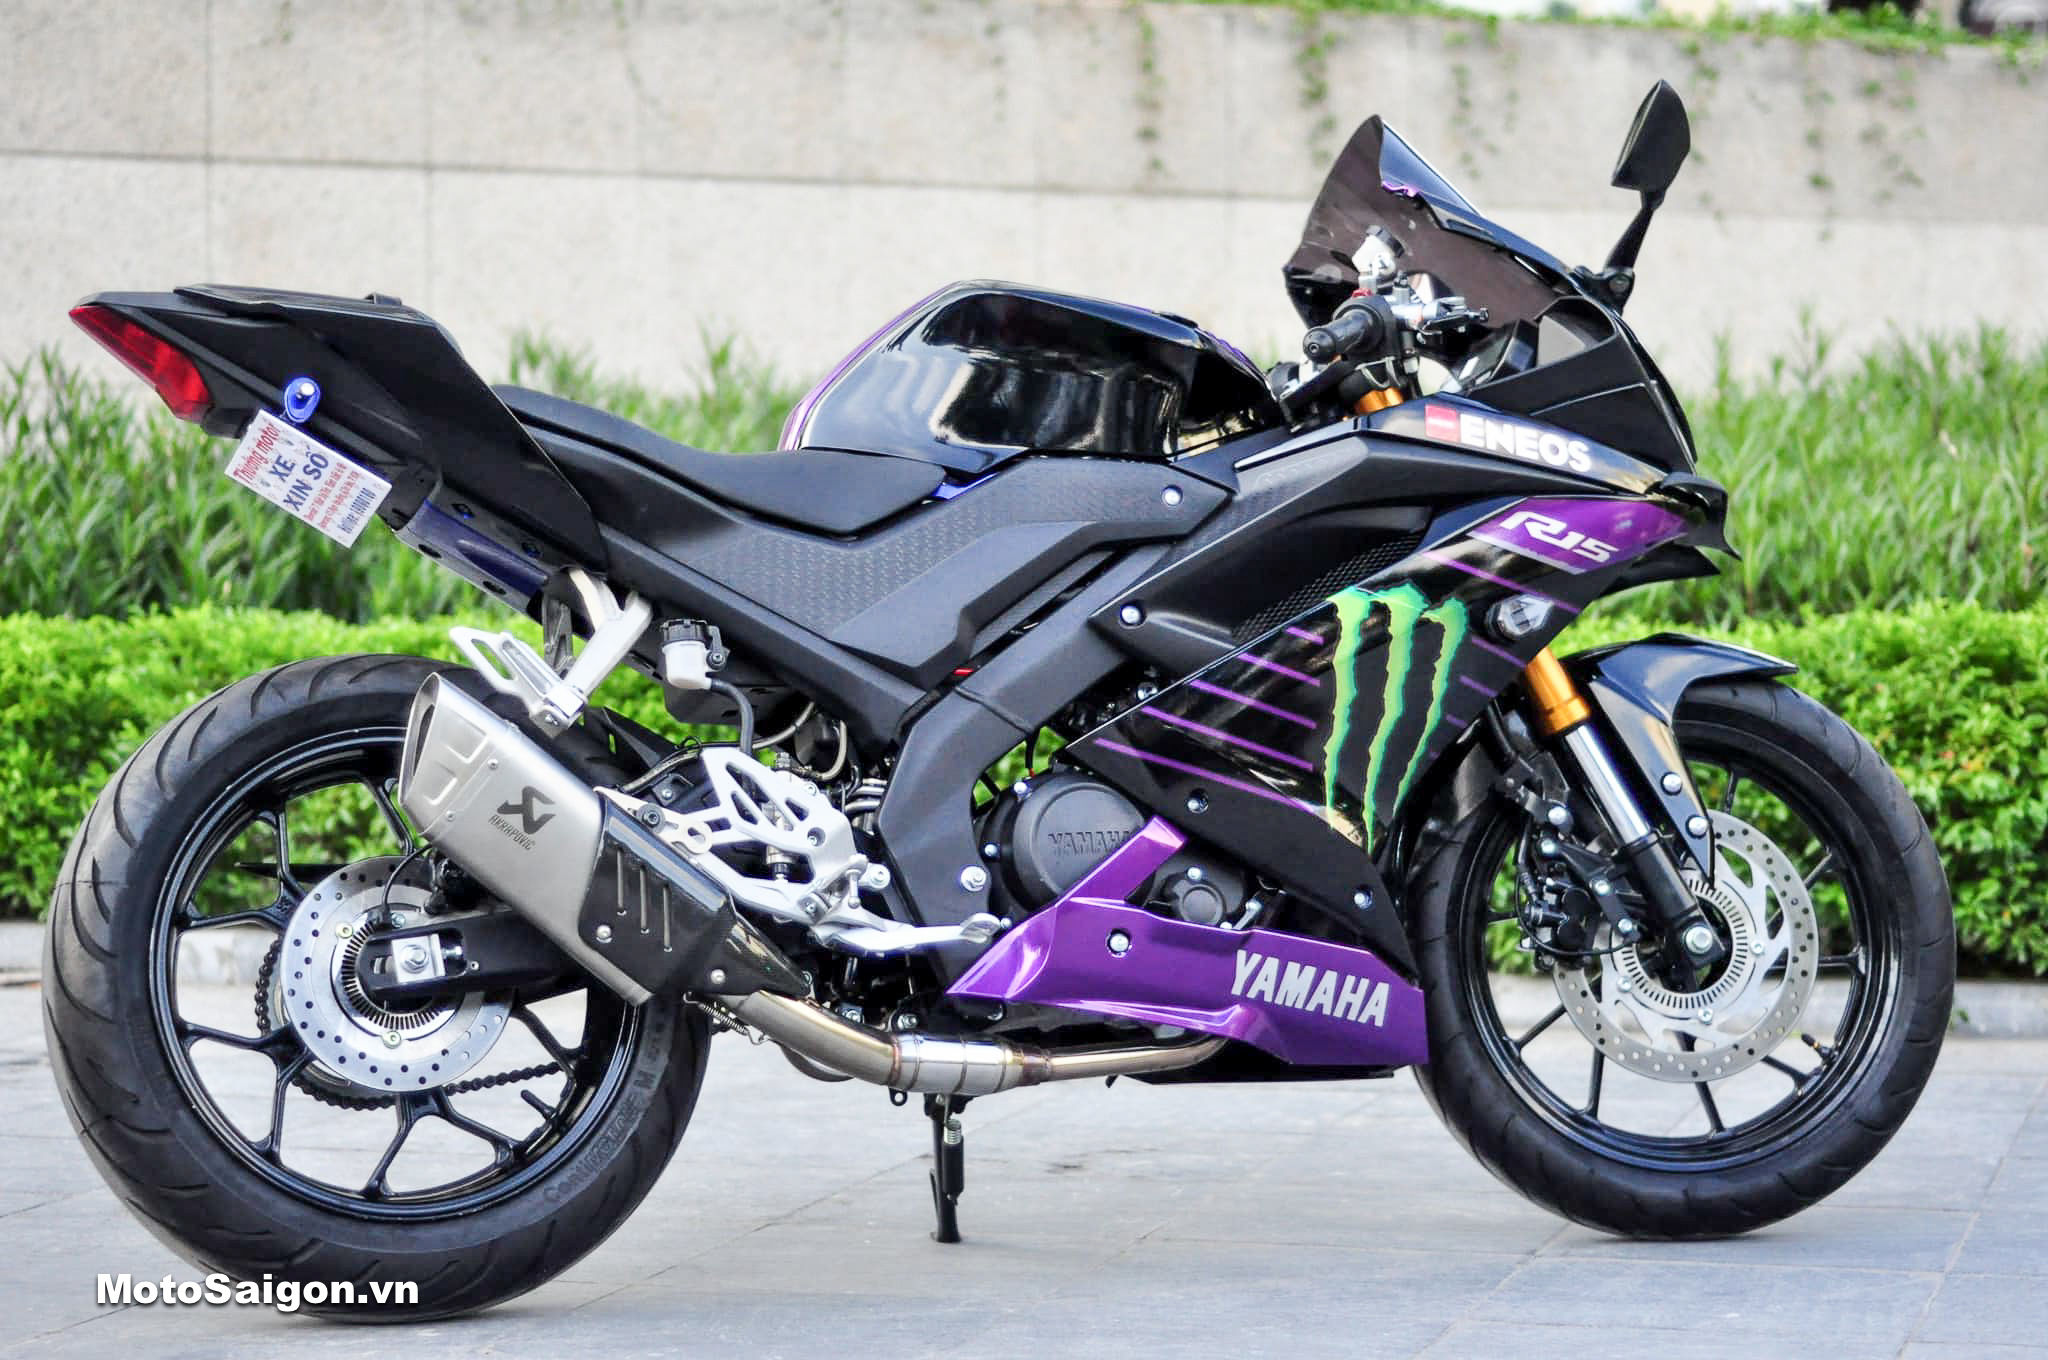 Diện kiến Yamaha R15 v3 ABS với gói độ 34 món đồ chơi gần 100 triệu đồng -  Motosaigon